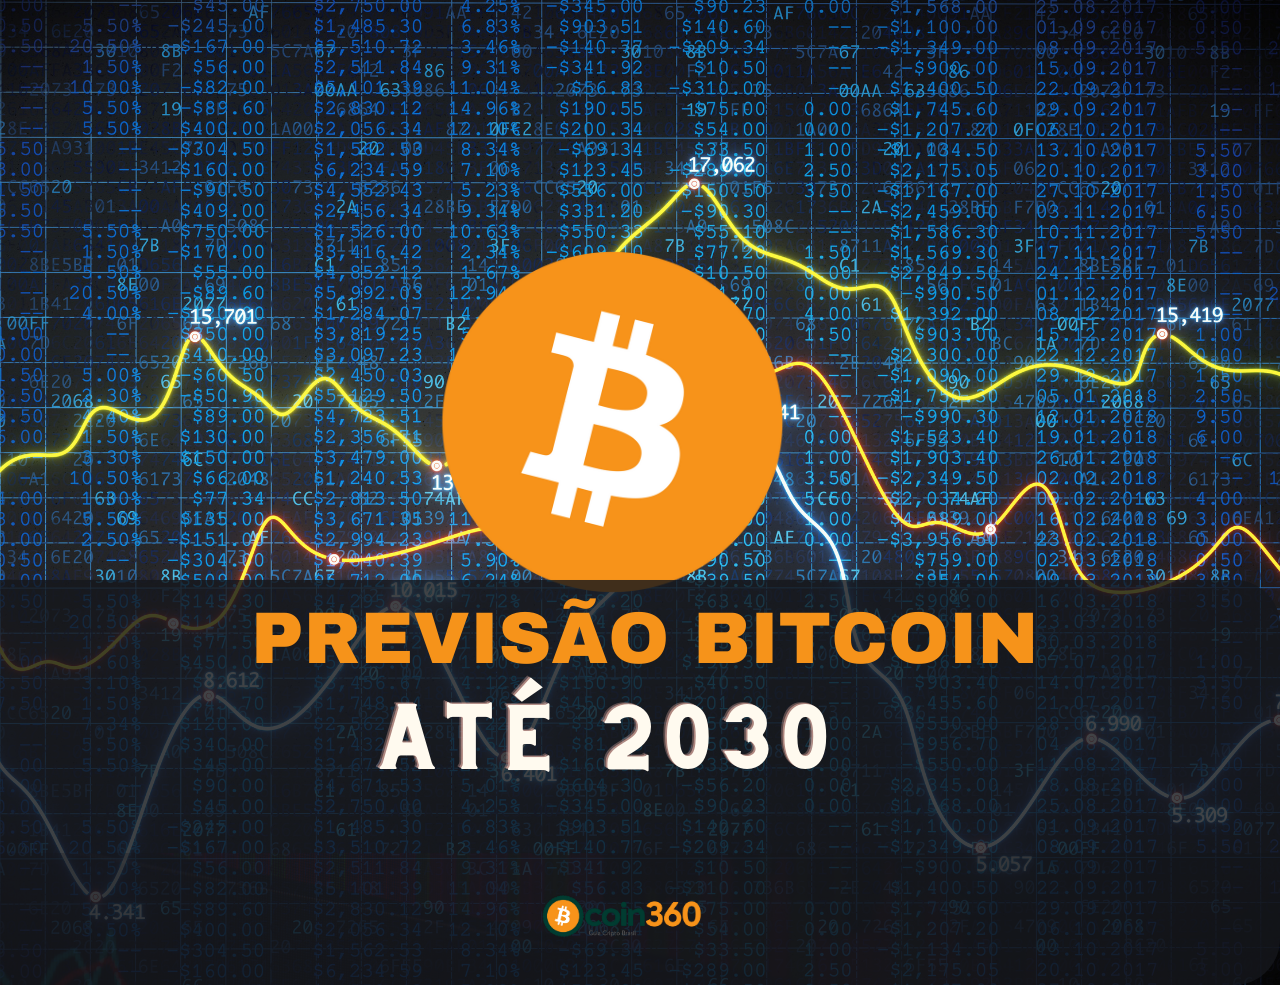 Previsão bitcoin até 2030